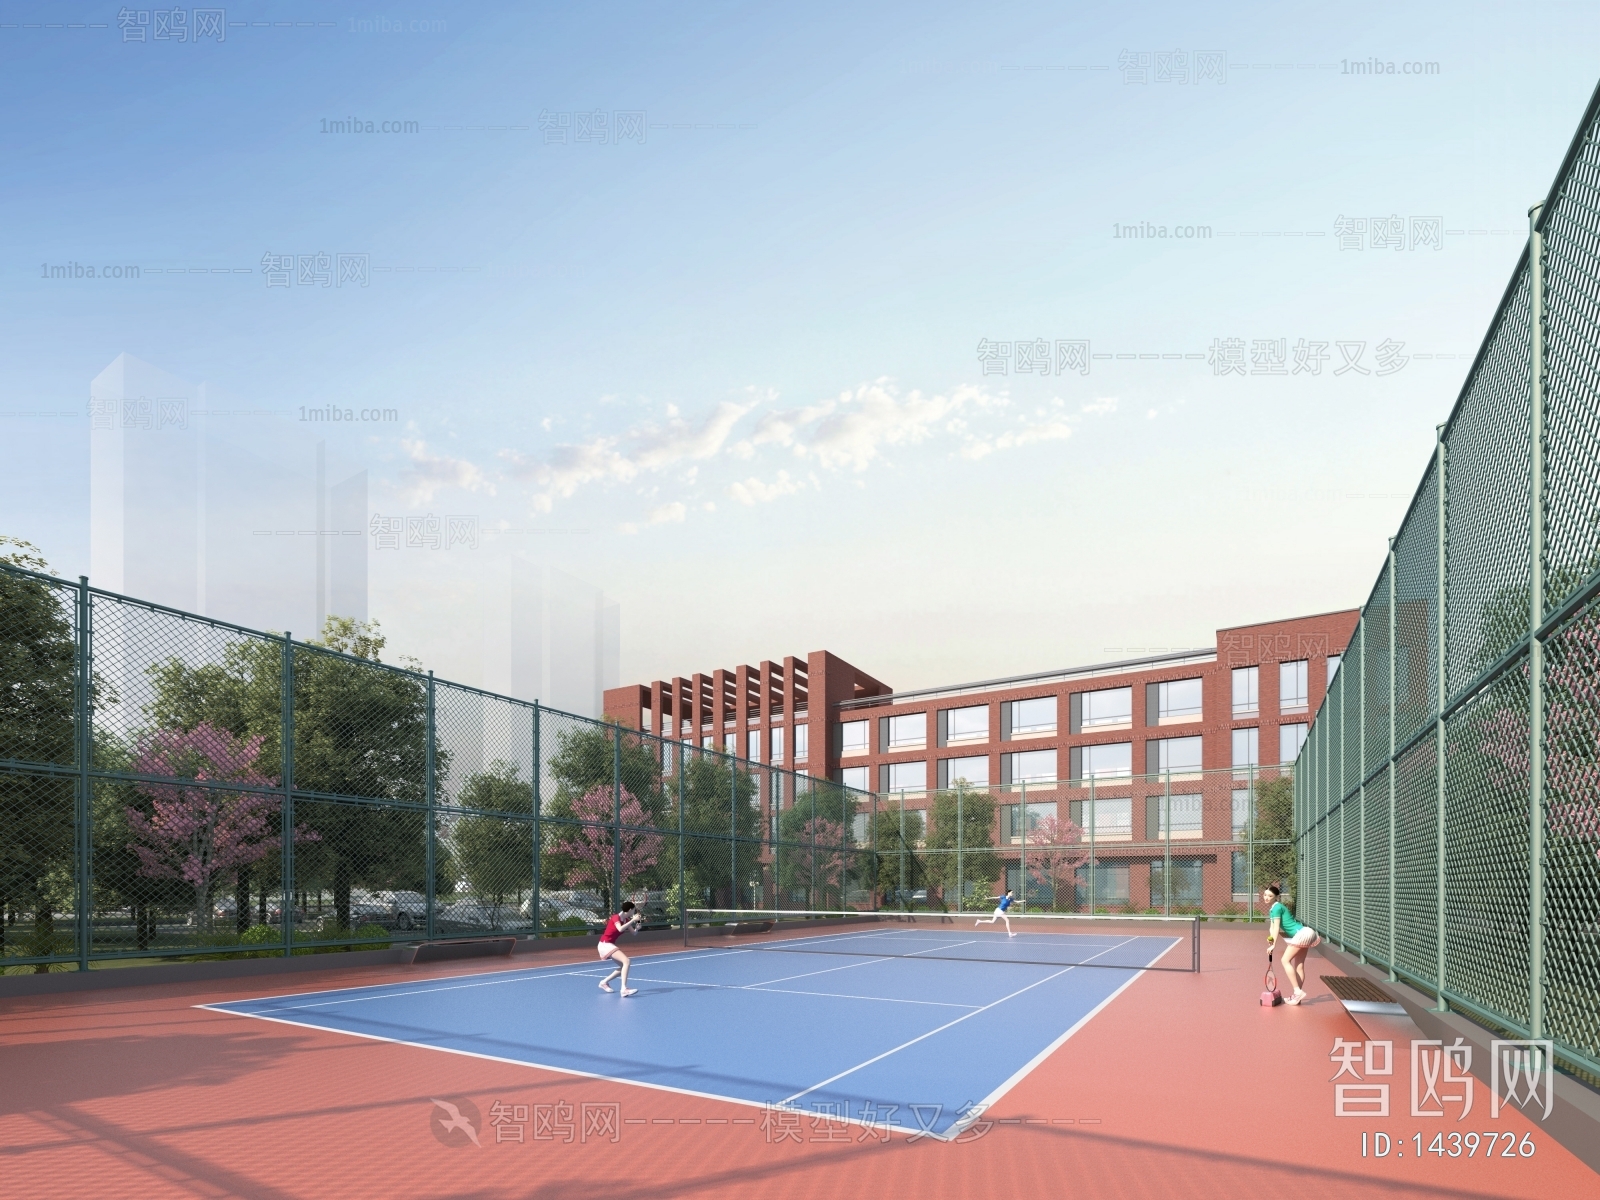 现代网球场